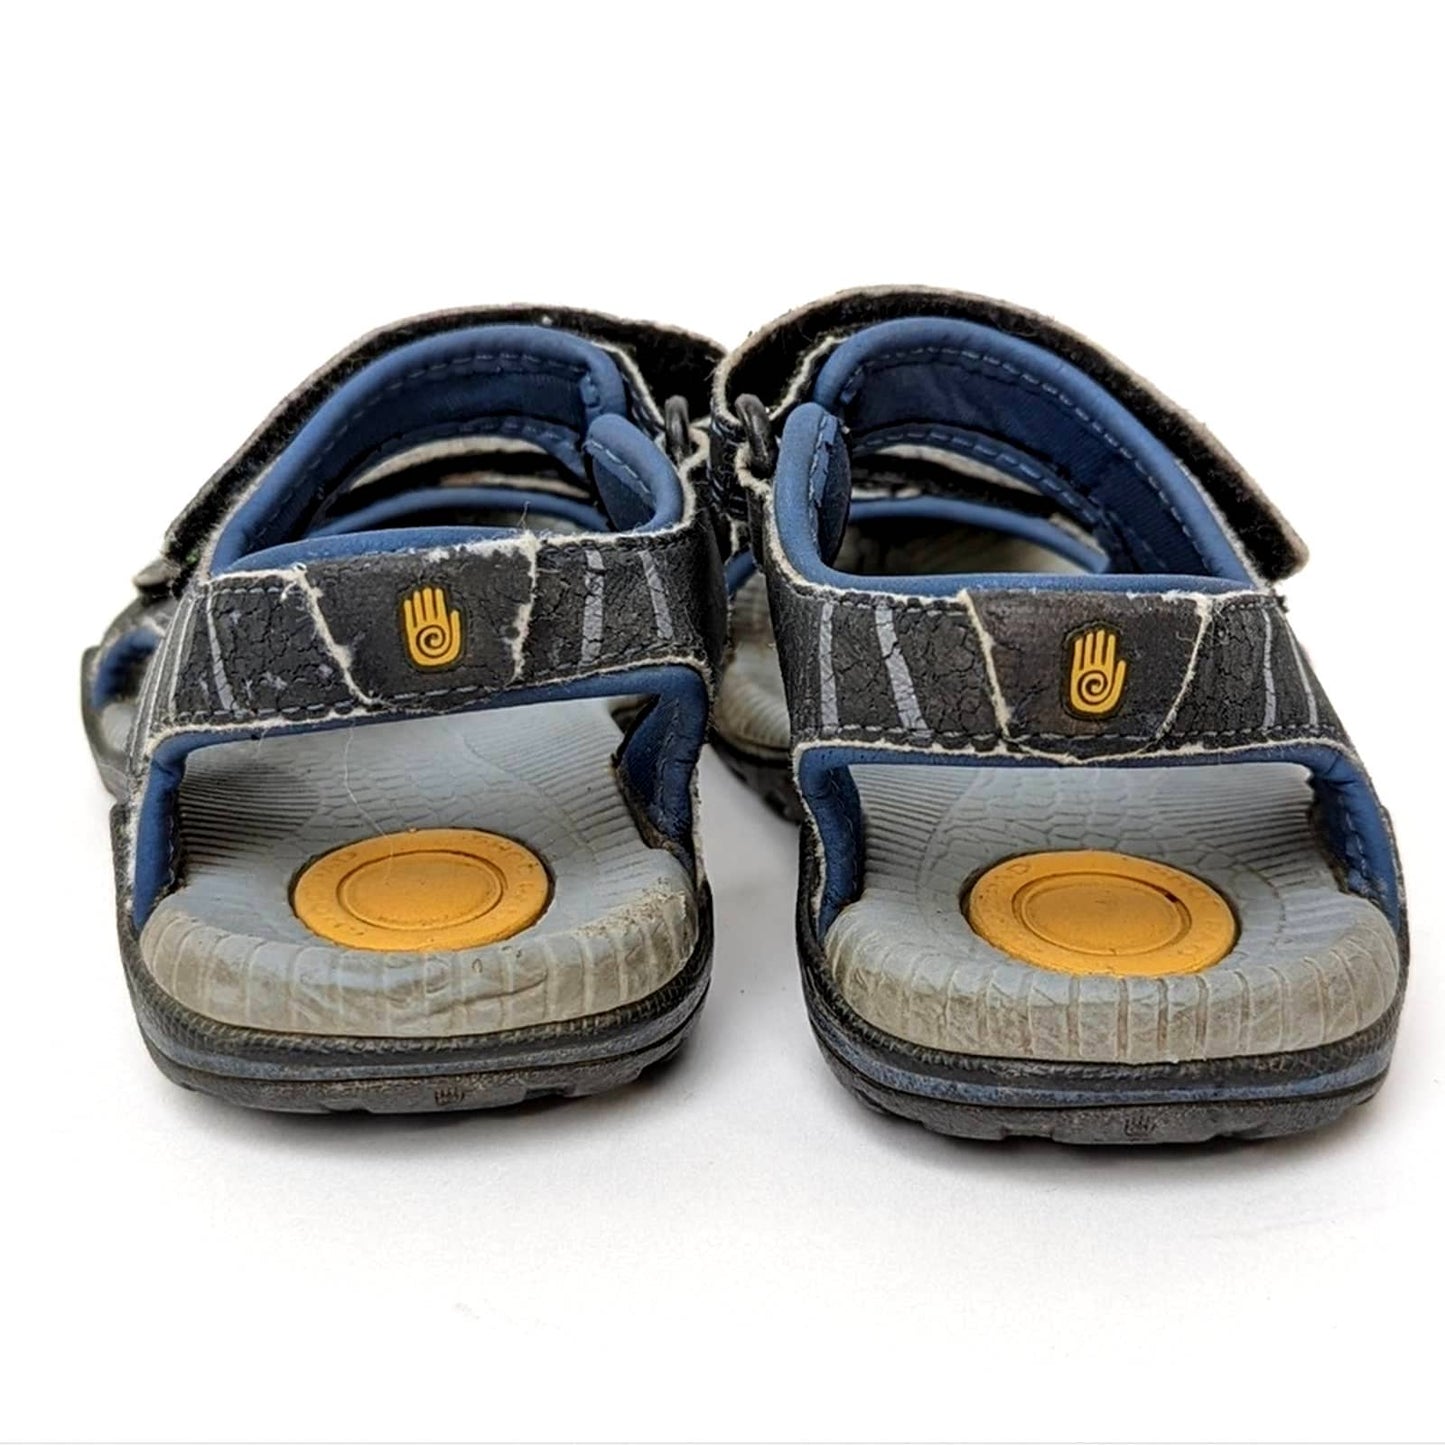 Teva Toachi 2 Water Hiking Sandals - 10 Toddler